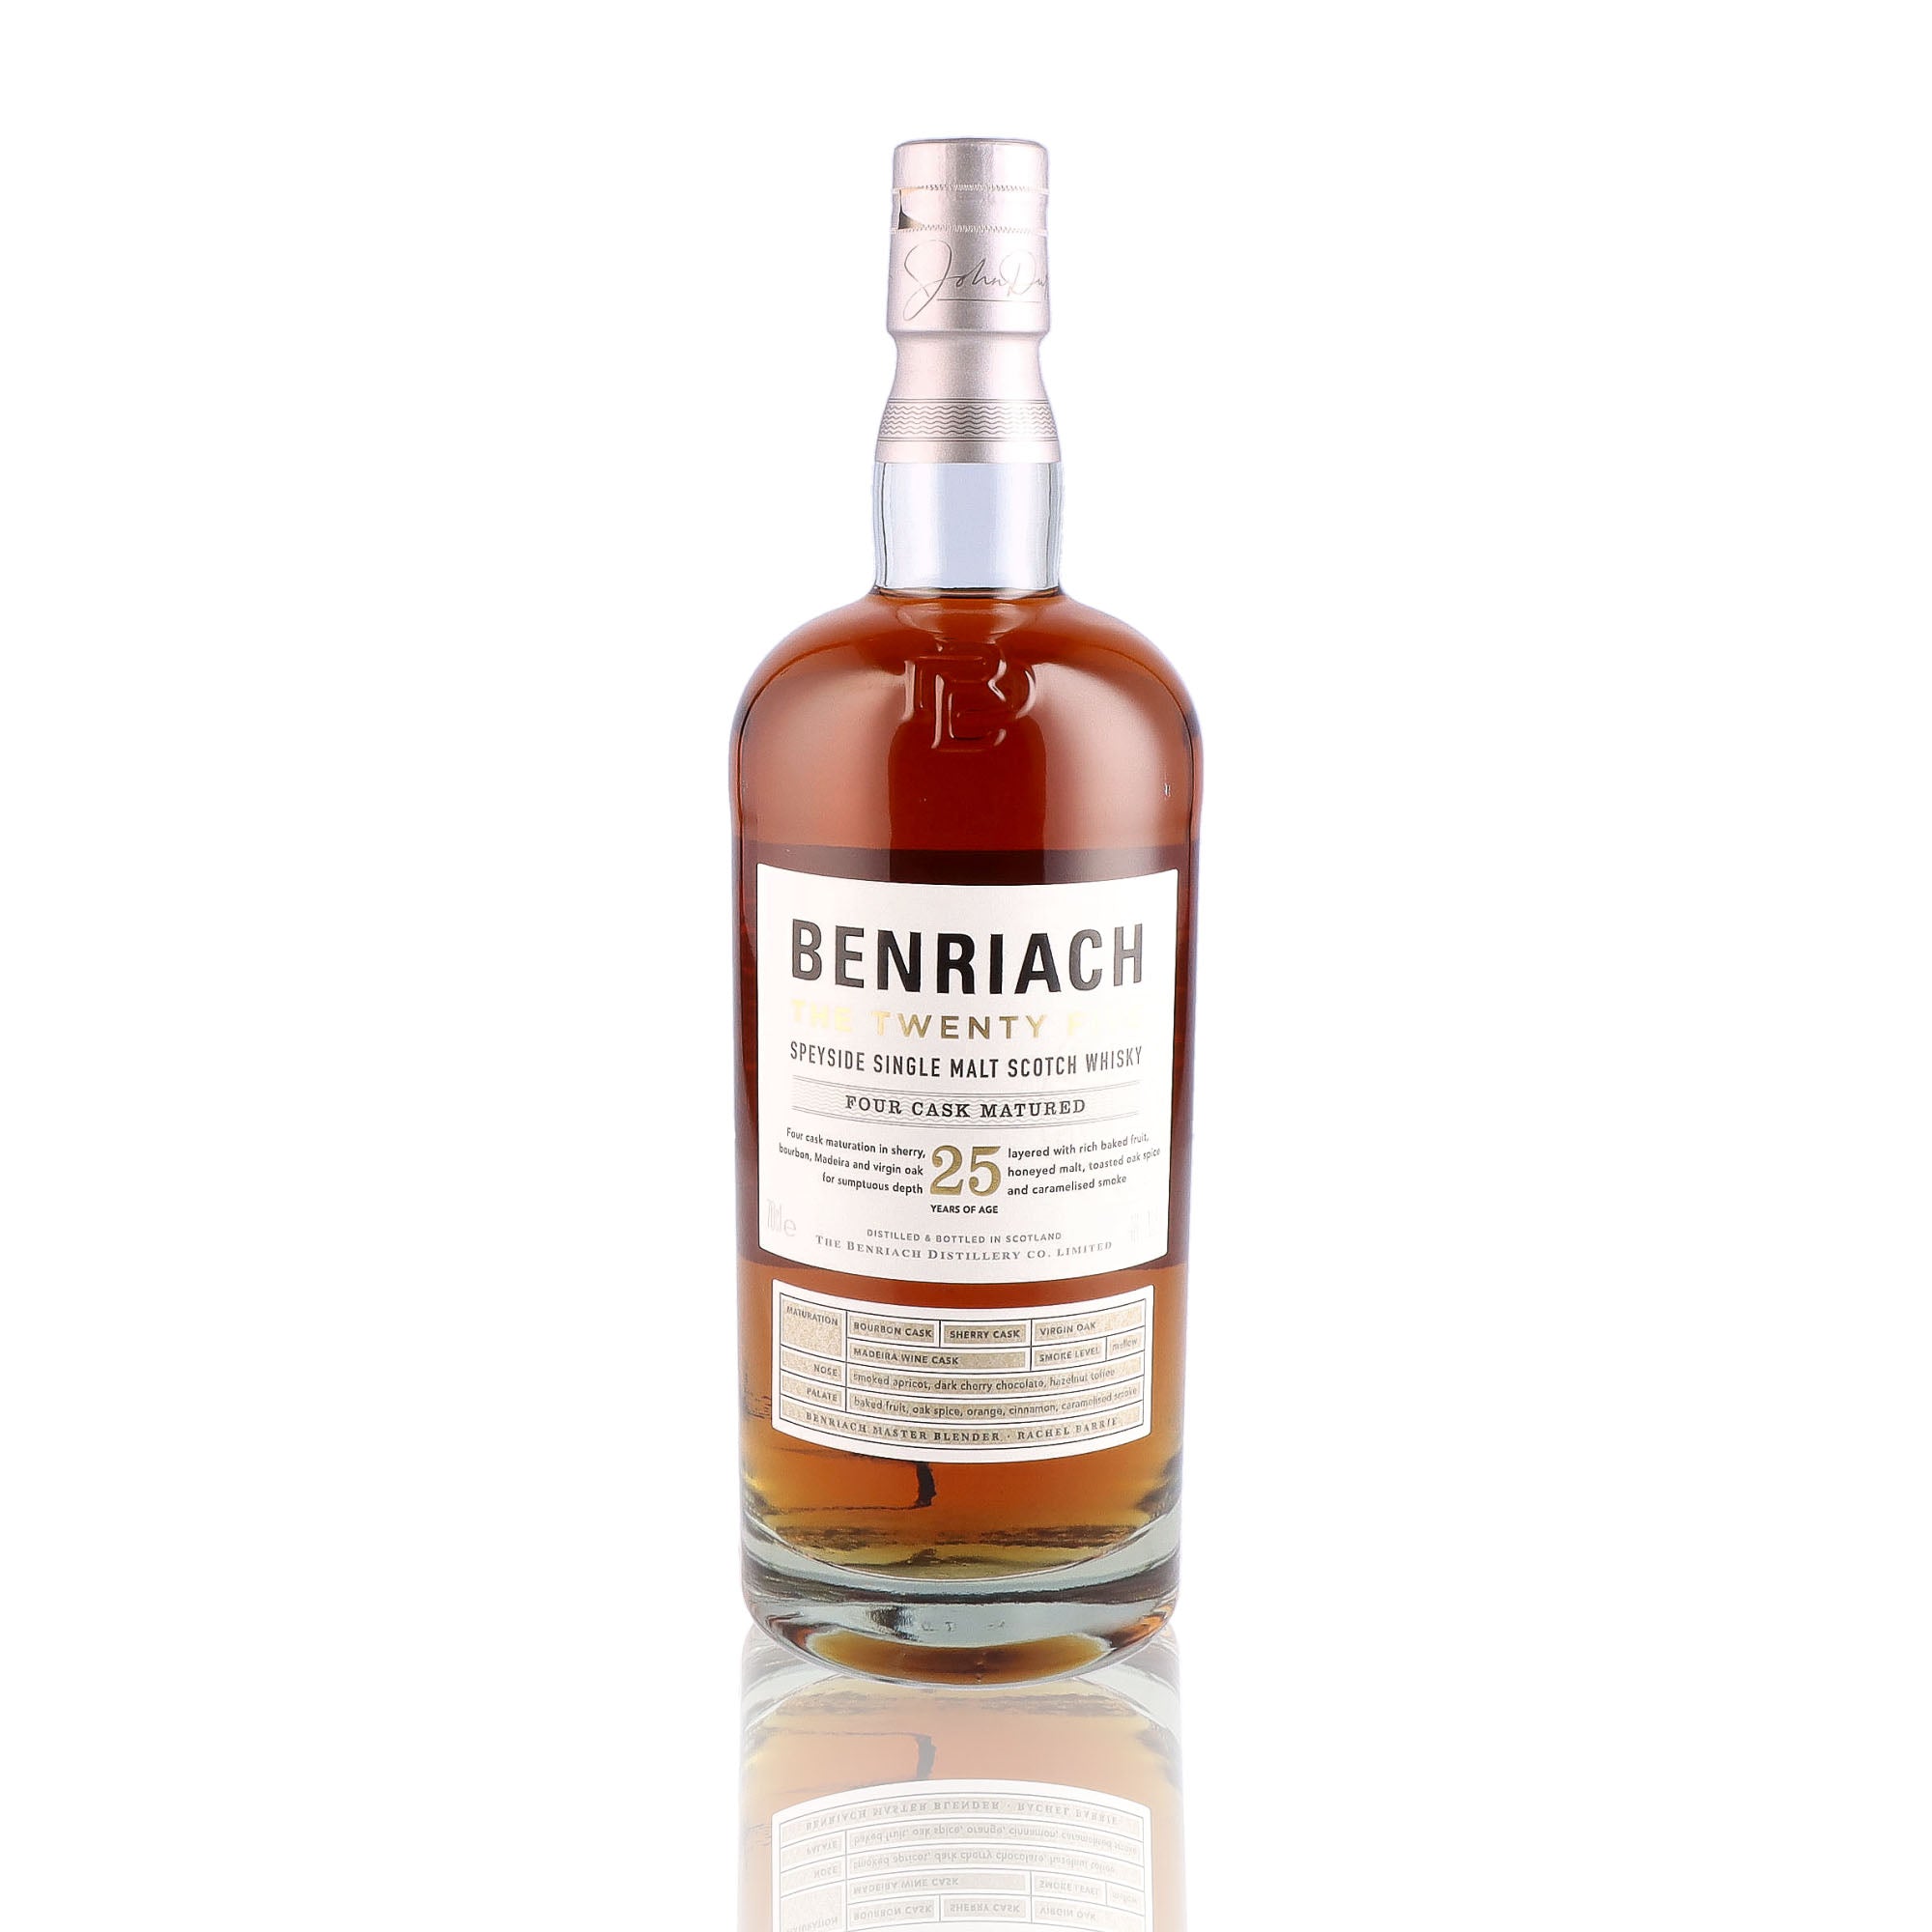 Une bouteille de Scotch Whisky Single Malt de la marque Benriach, nommée The Twenty Five, 25 ans d'âge.